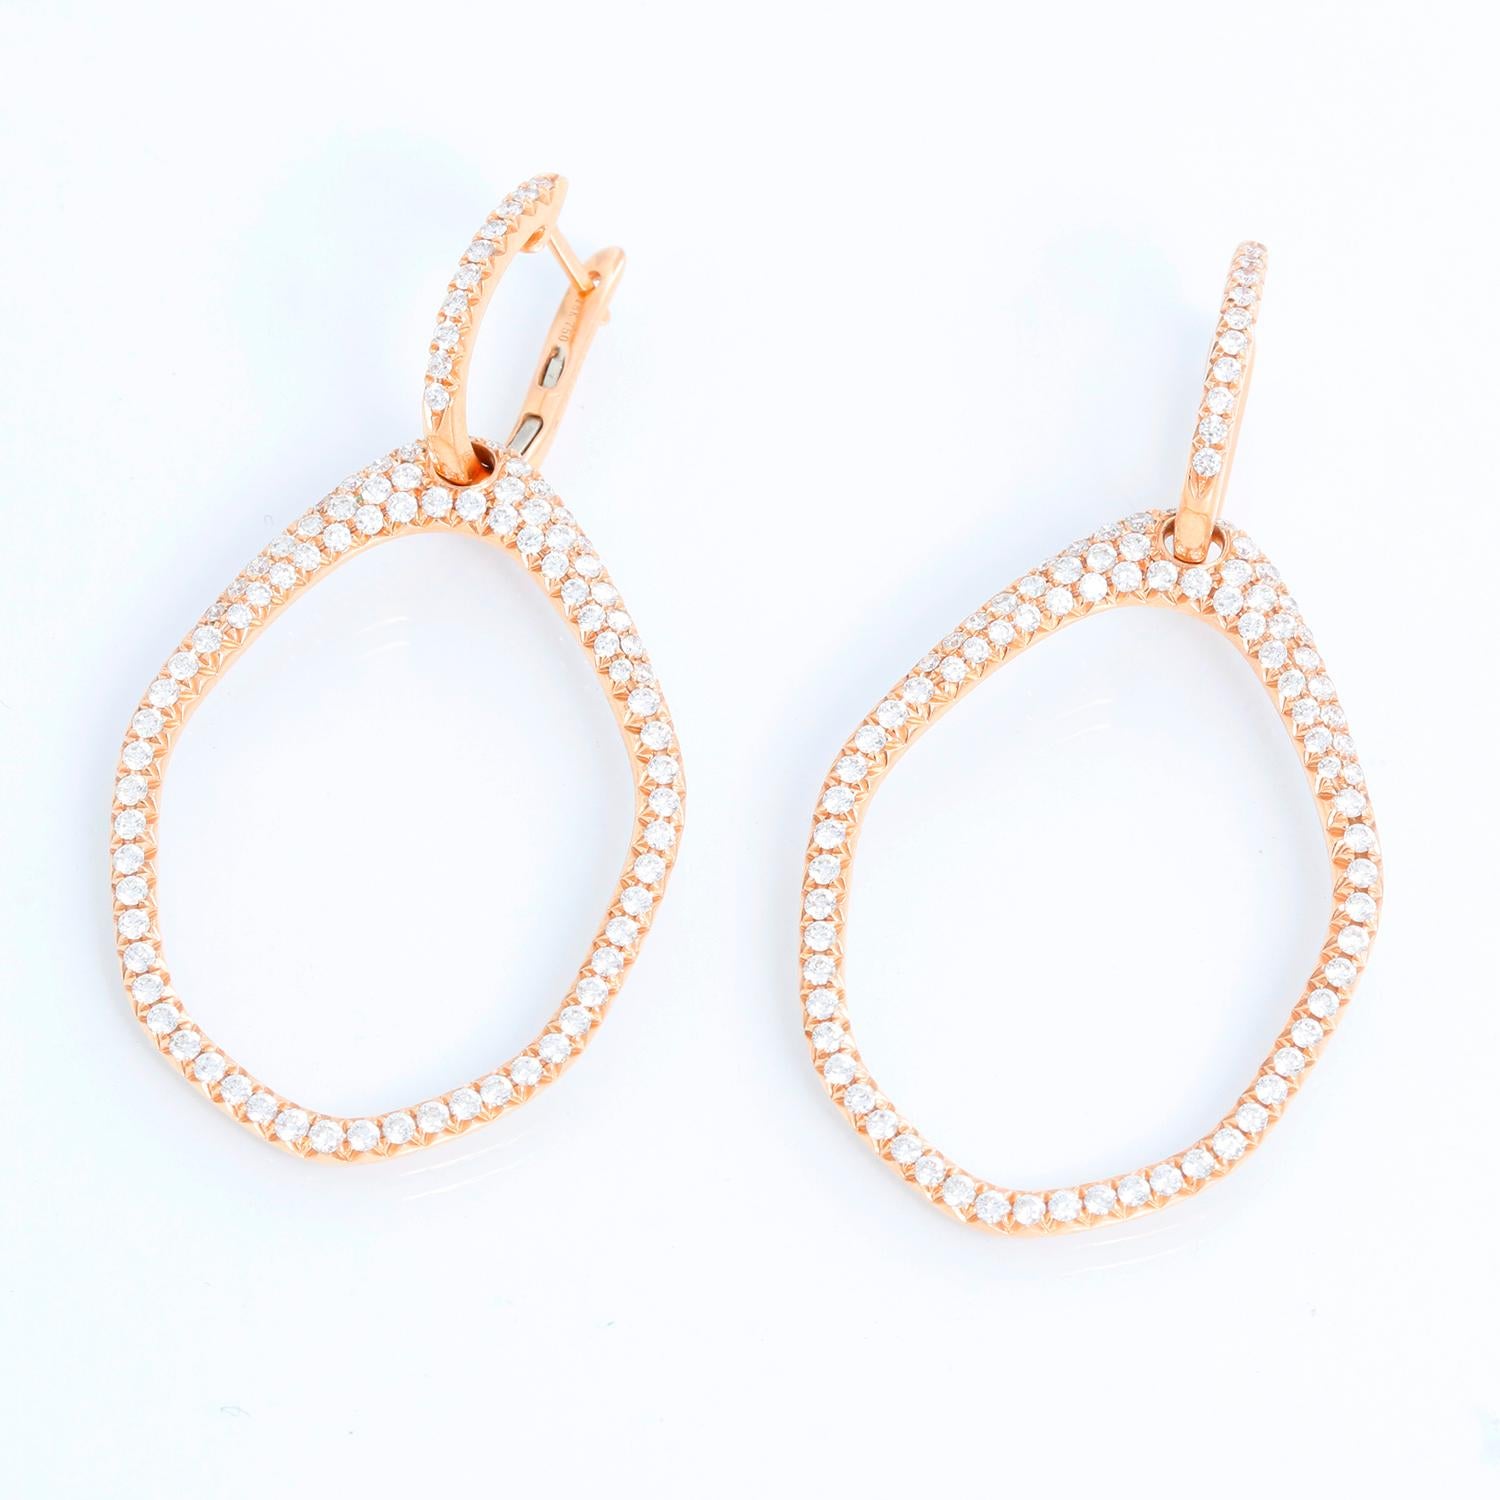 Ces magnifiques boucles d'oreilles en or rose 18 carats présentent 2,03 carats de diamants très blancs de couleur H et de pureté SI1. Ces boucles d'oreilles sont polyvalentes et peuvent être portées avec ou sans l'anneau. Les boucles d'oreilles